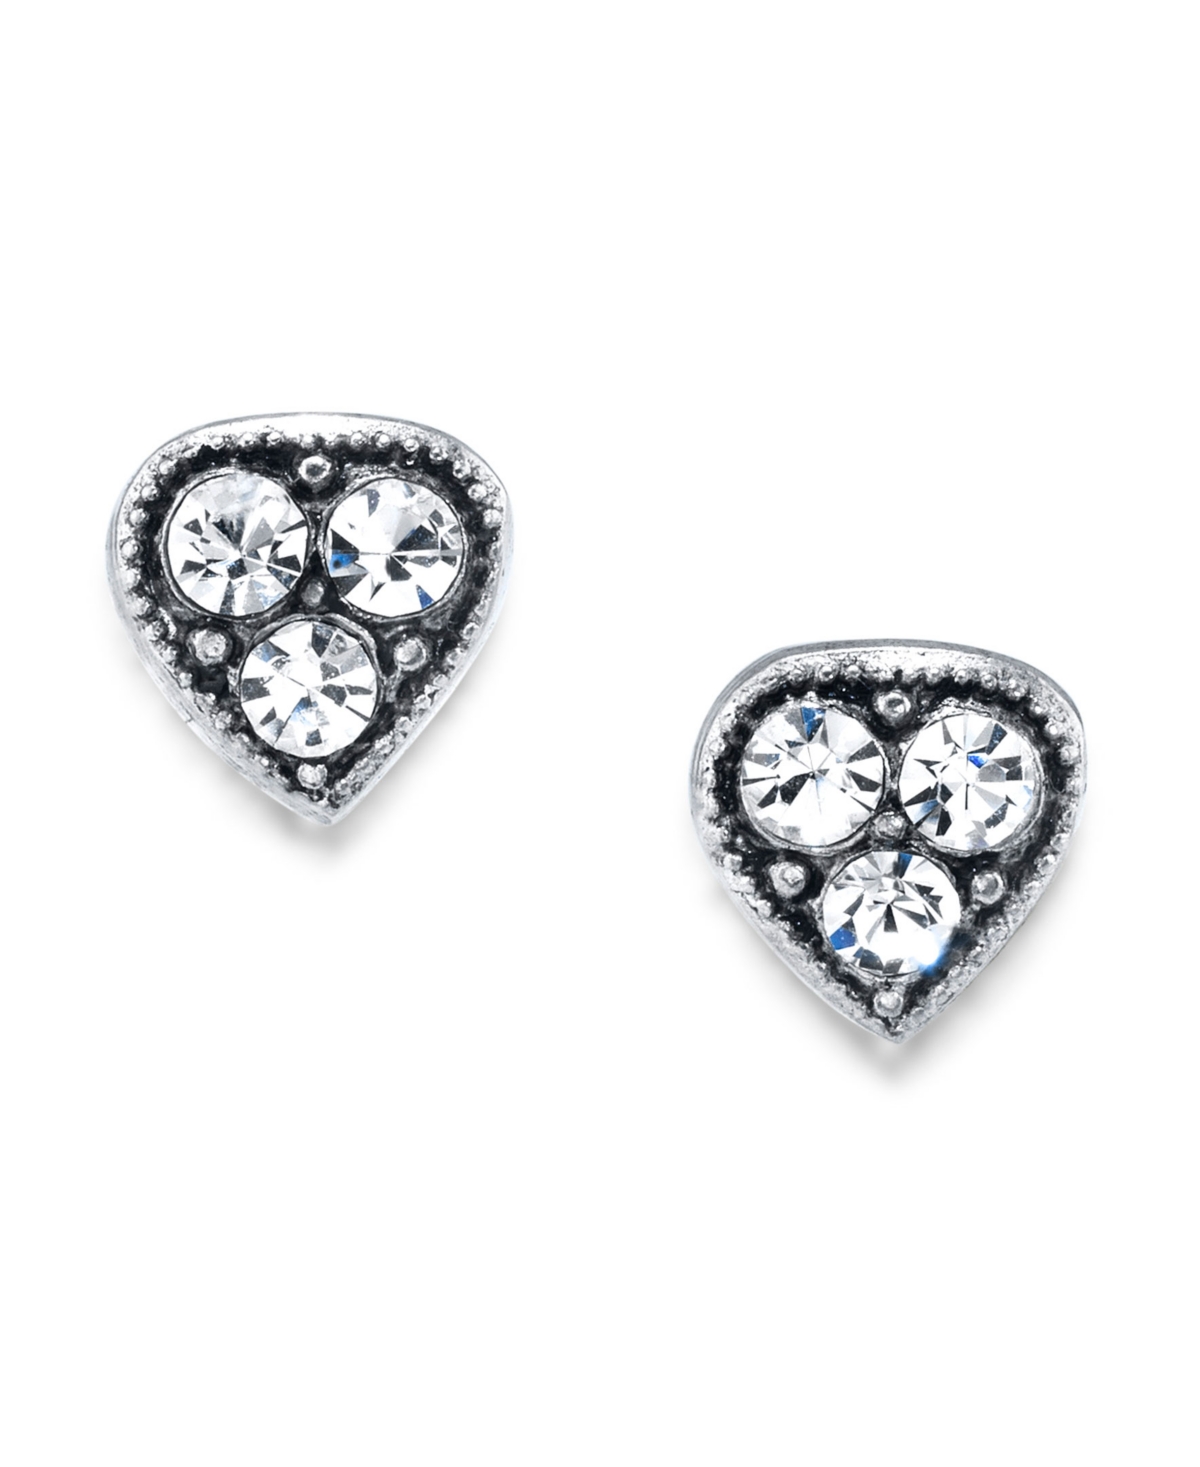 2028 Silver Tone Crystal Heart Stud Earrings In White